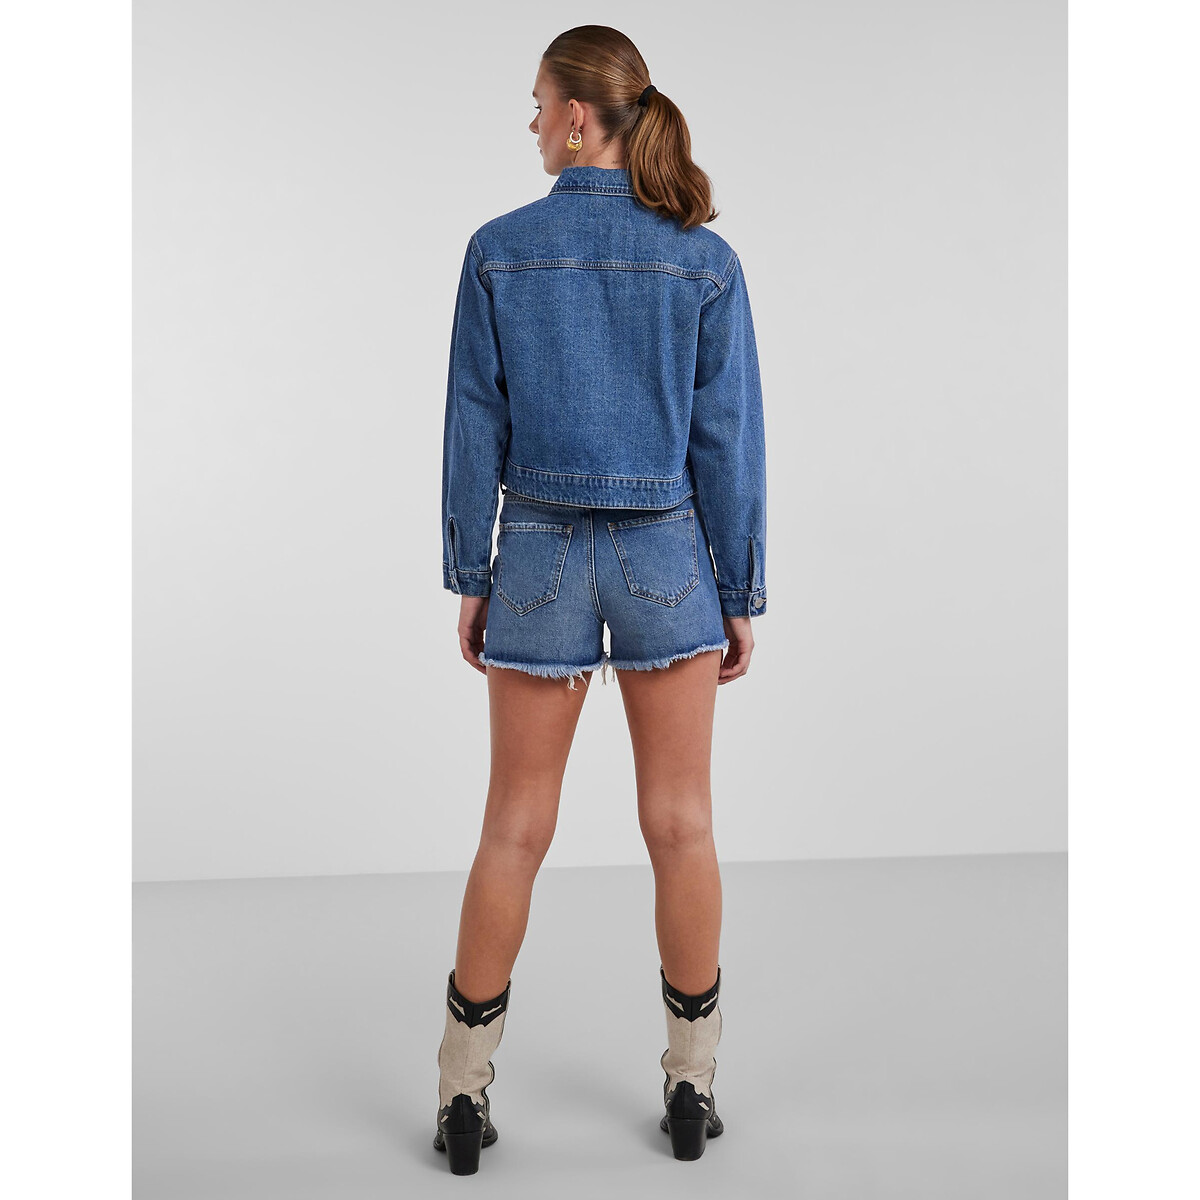 Жакет Короткий из джинсовой ткани XL синий LaRedoute, размер XL - фото 3